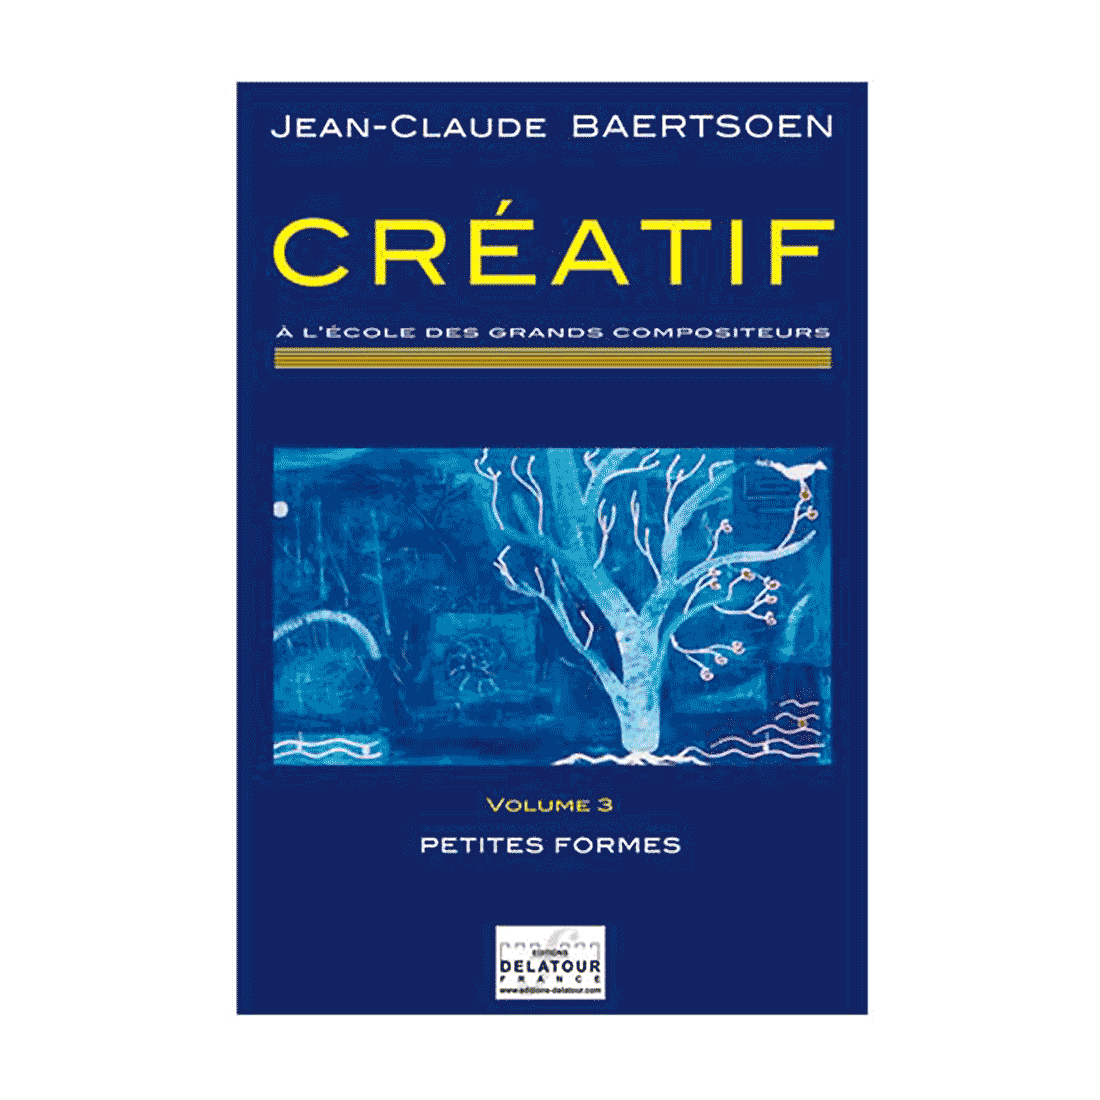 CREATIF A l'école des grands compositeurs - Vol. 3